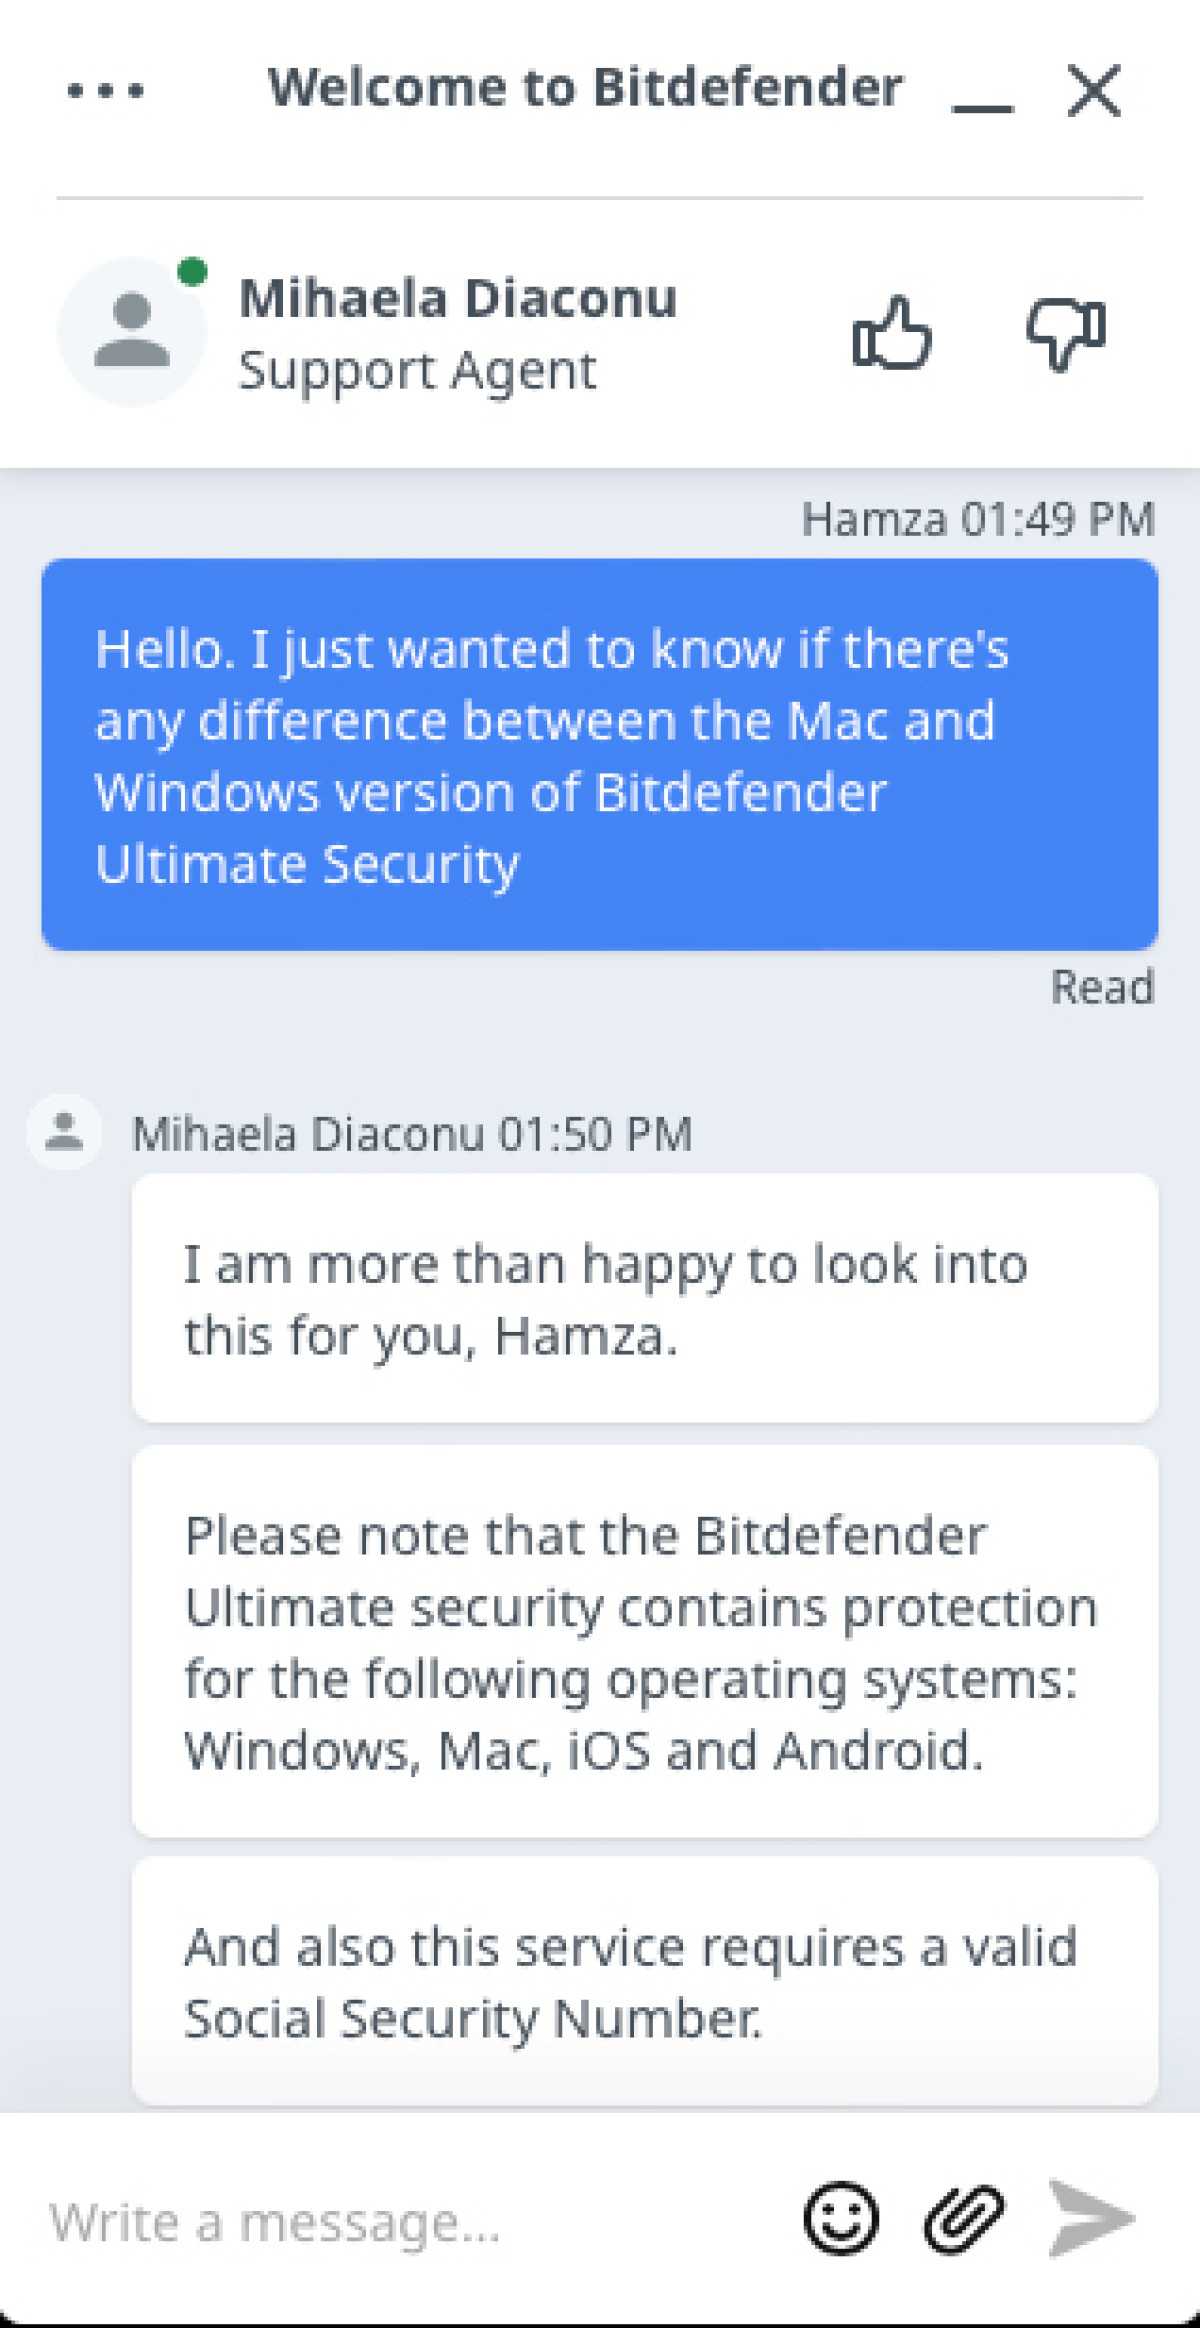 Bitdefender live chat support